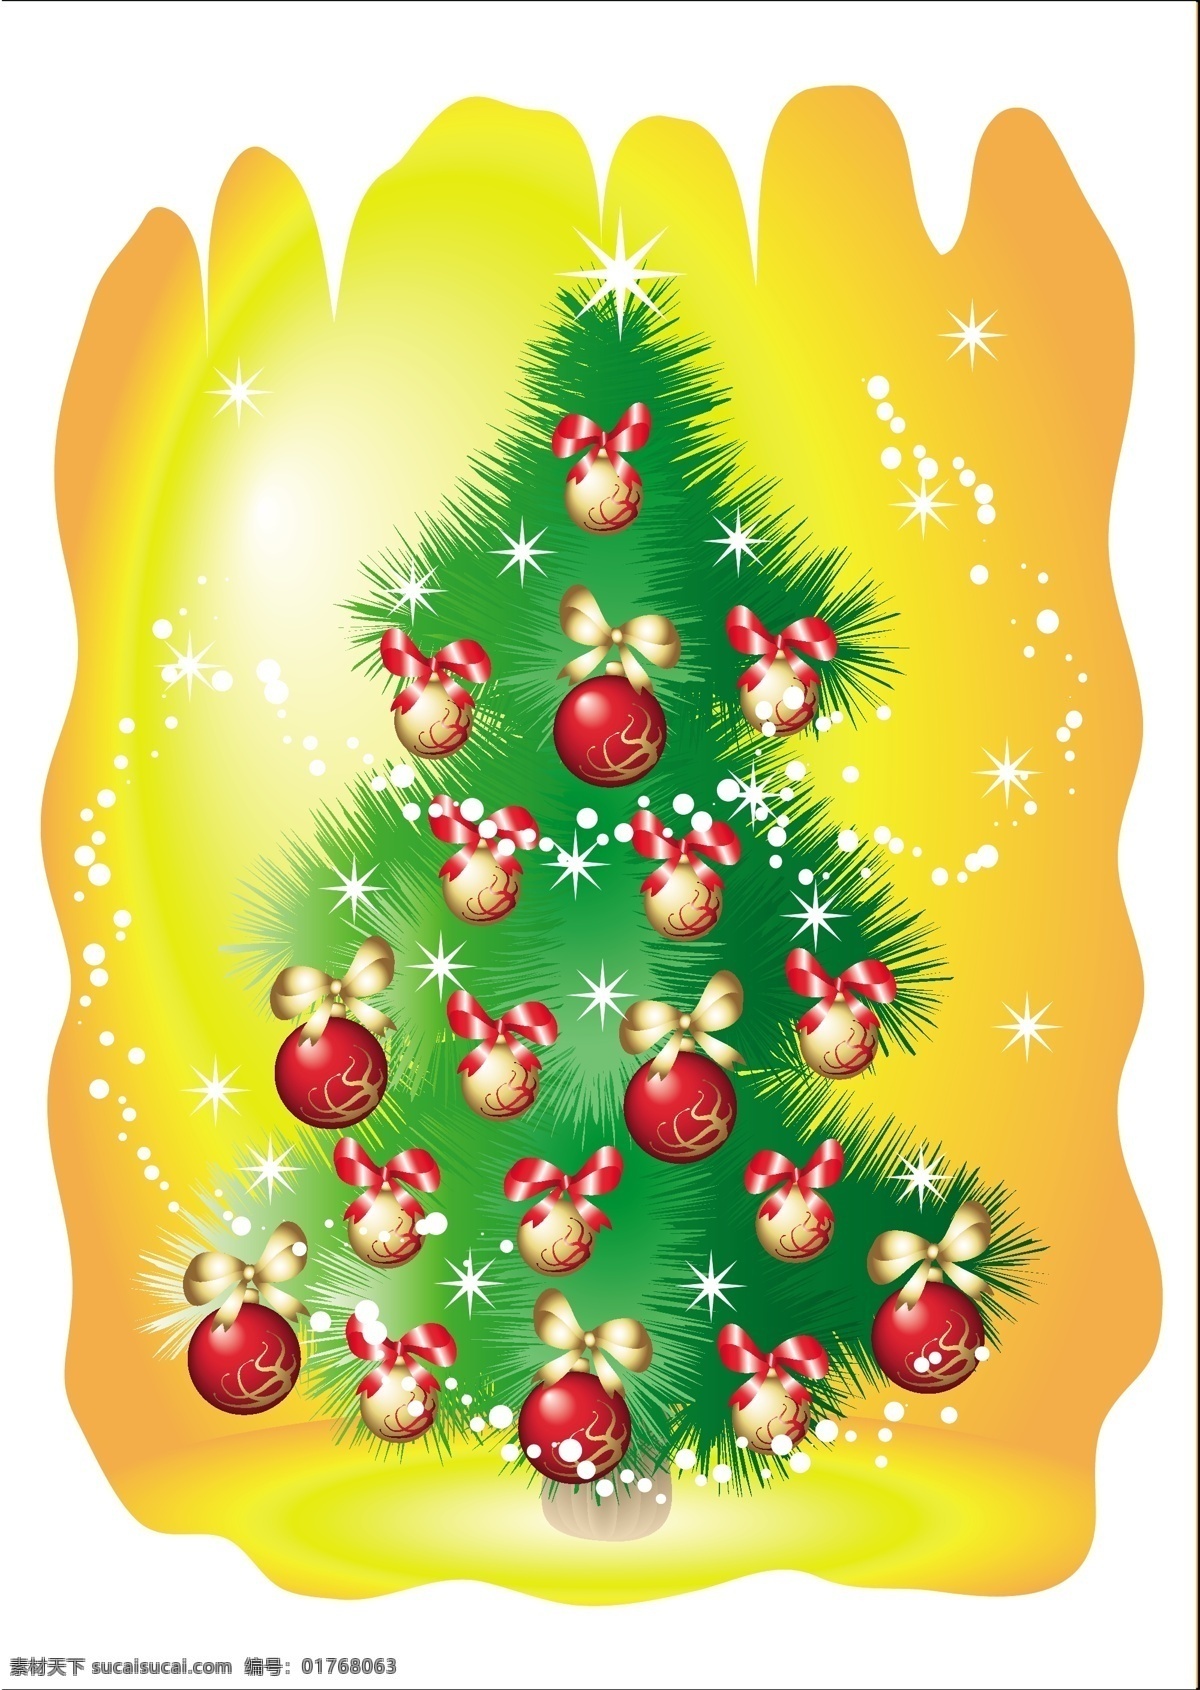 可爱 圣诞树 缤纷圣诞 圣诞 挂 球 动感 线 可爱圣诞树 圣诞色彩 雪花圆球 蝴蝶结 圣诞火树银花 节日素材 其他节日